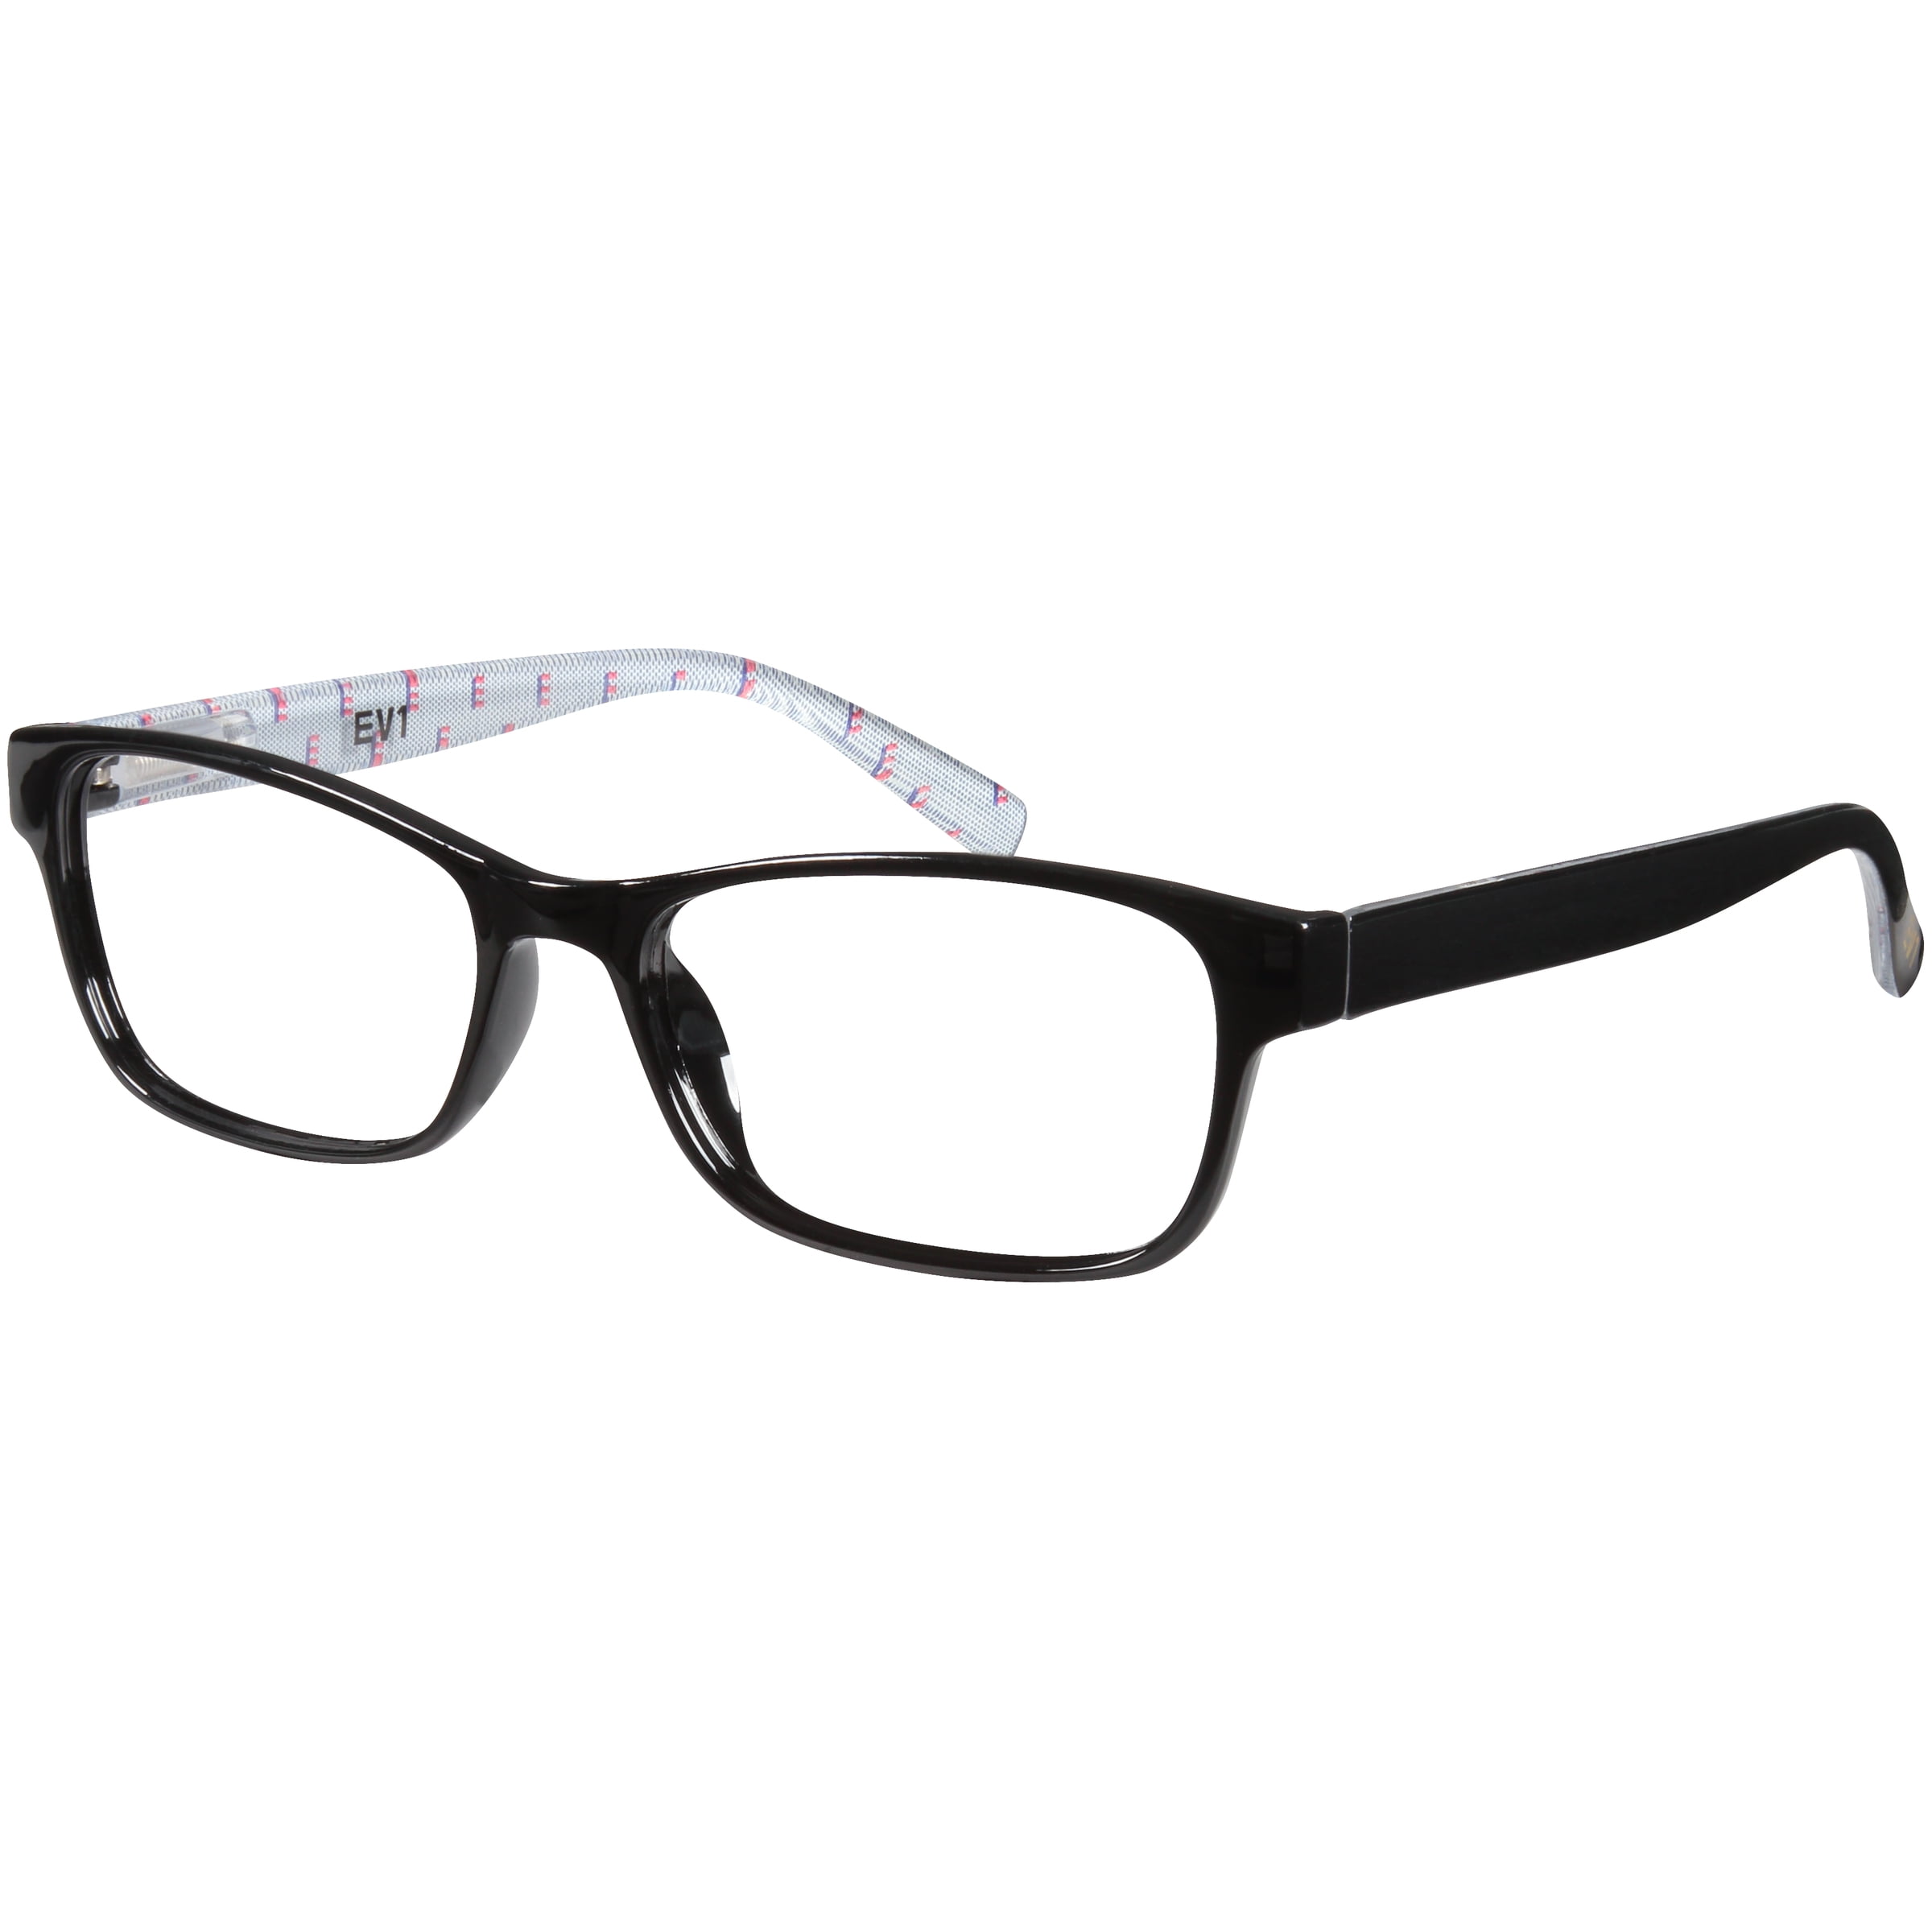 EV1 Skylar Black +1.50 Reading Glasses with Case